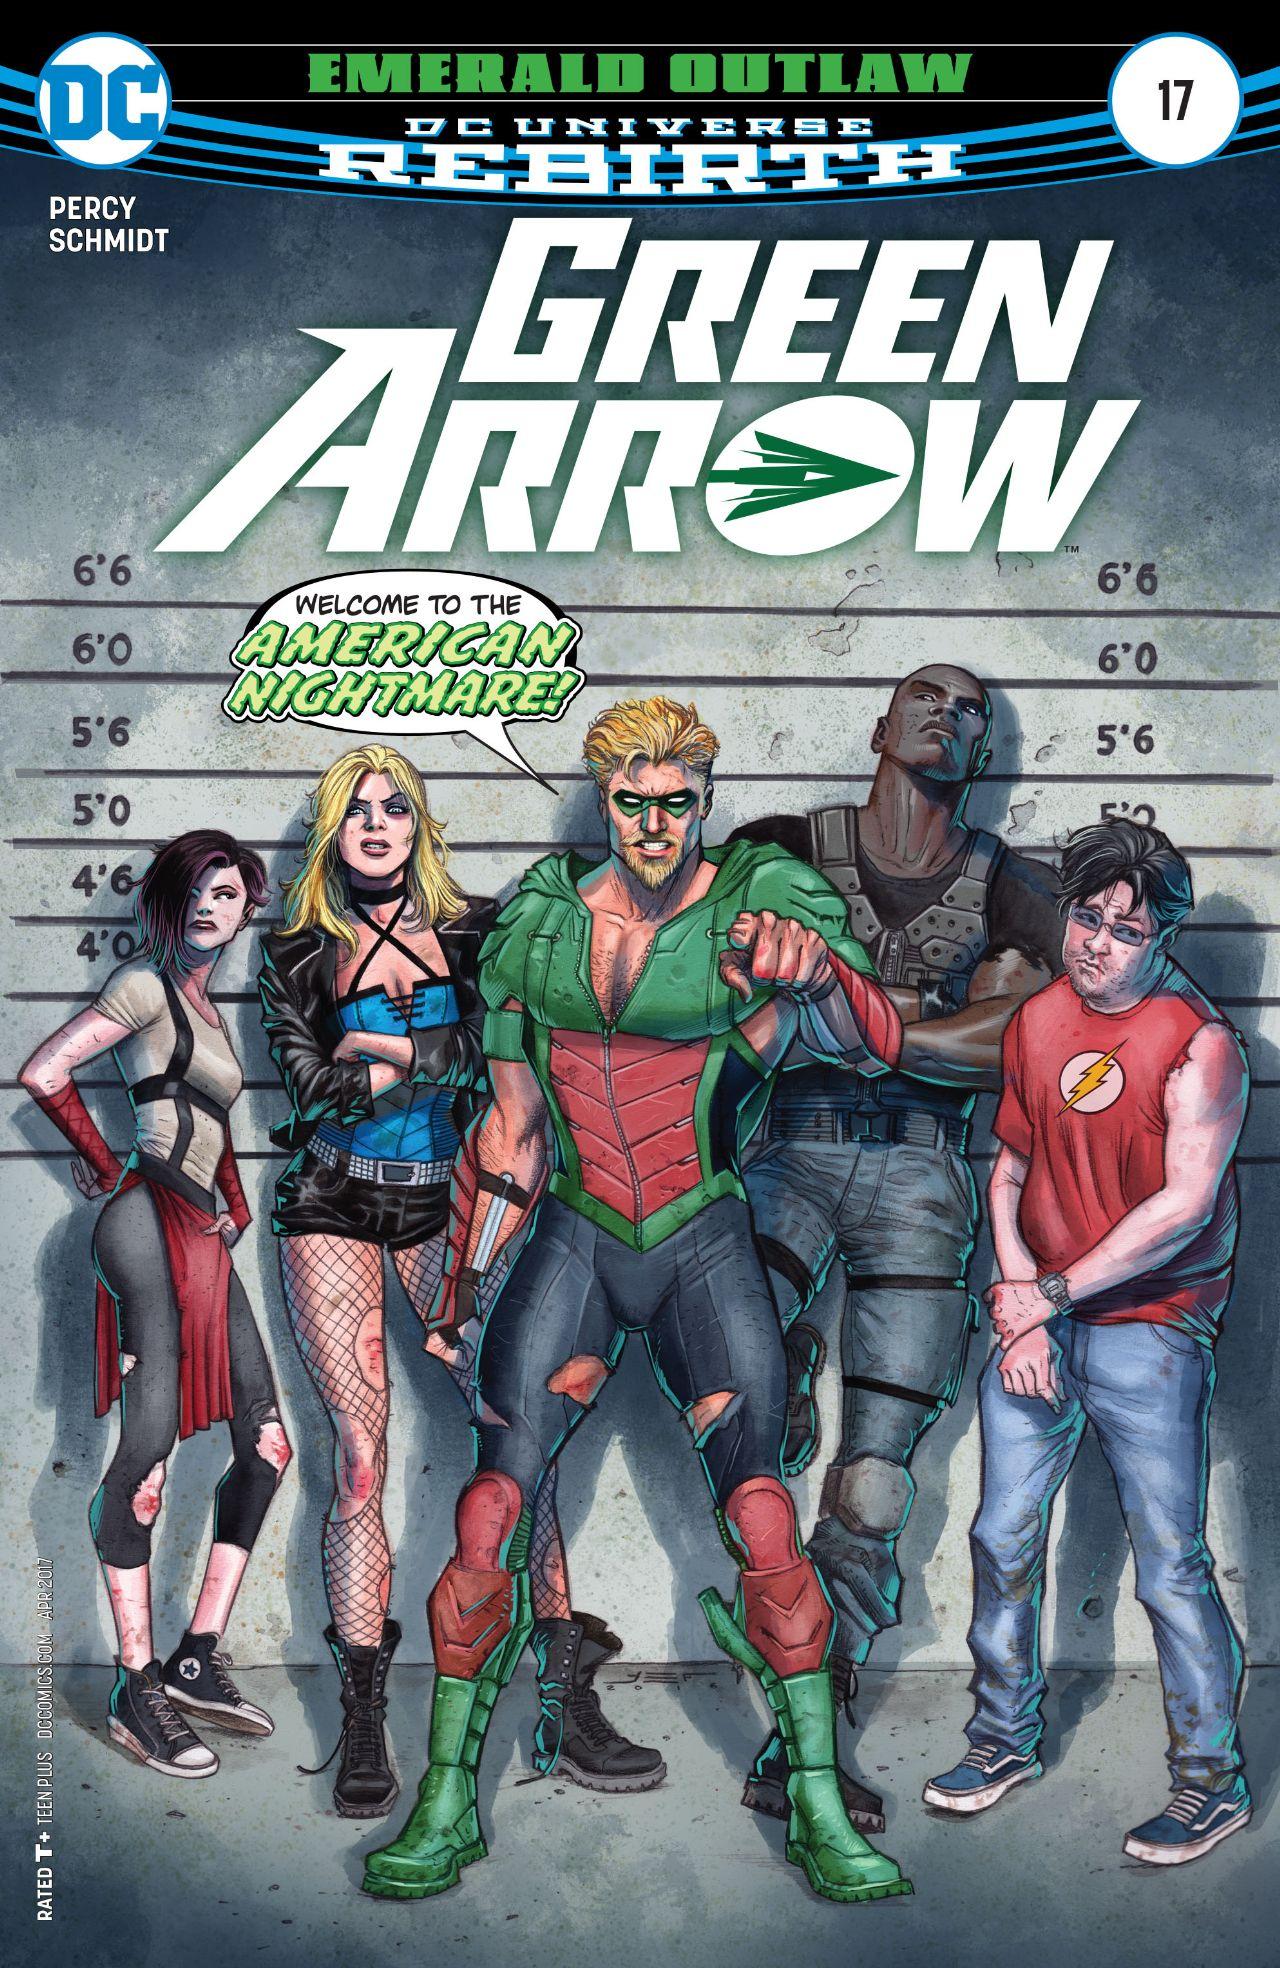 Green Arrow Vol. 6 #17